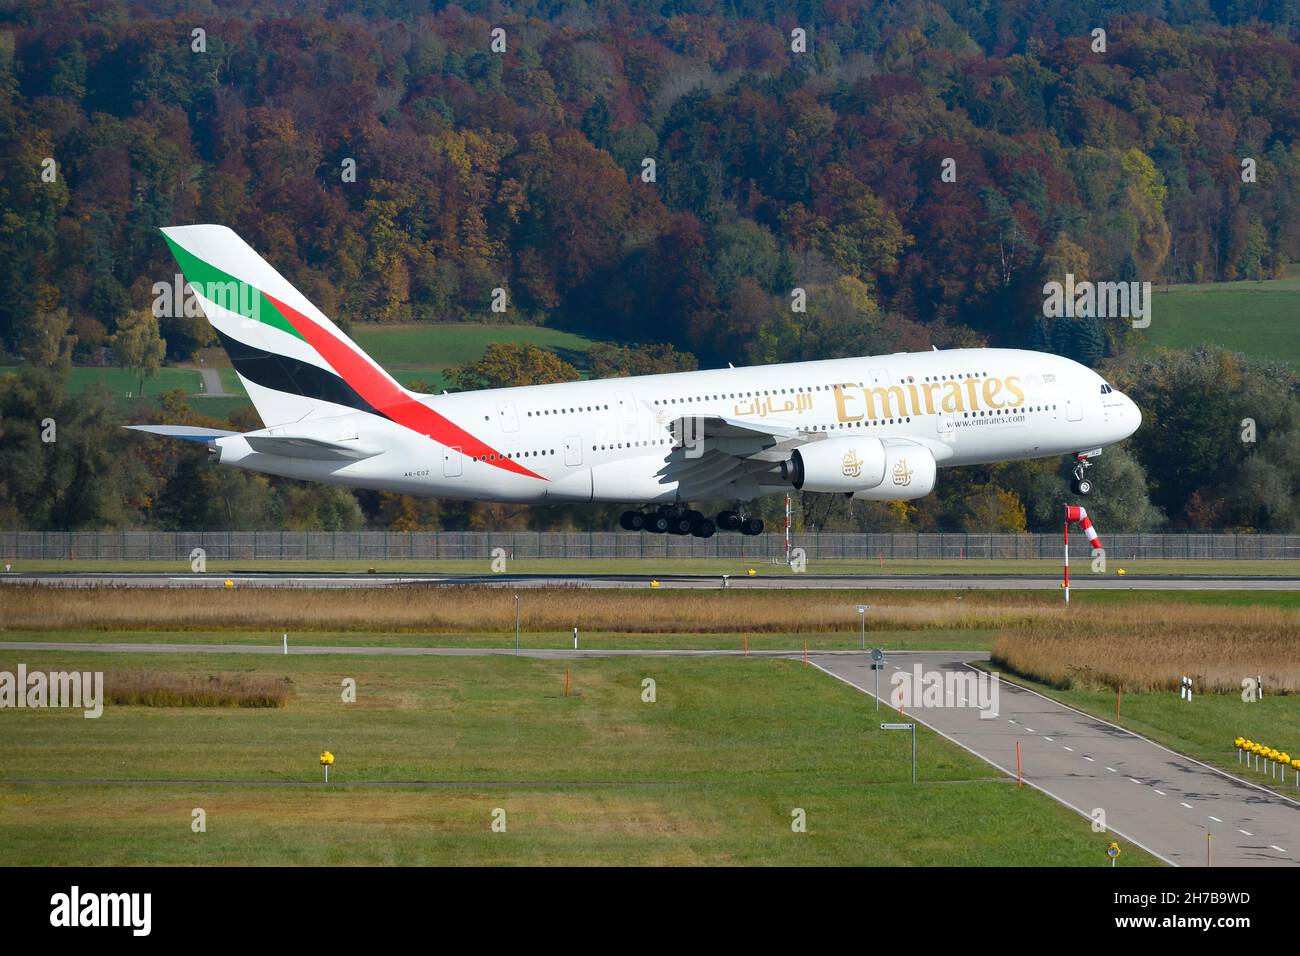 Emirates Airline Airbus A380 avion atterrissage à haute voix de Dubaï, Émirats arabes Unis.Avion d'Emirates Airlines. Banque D'Images